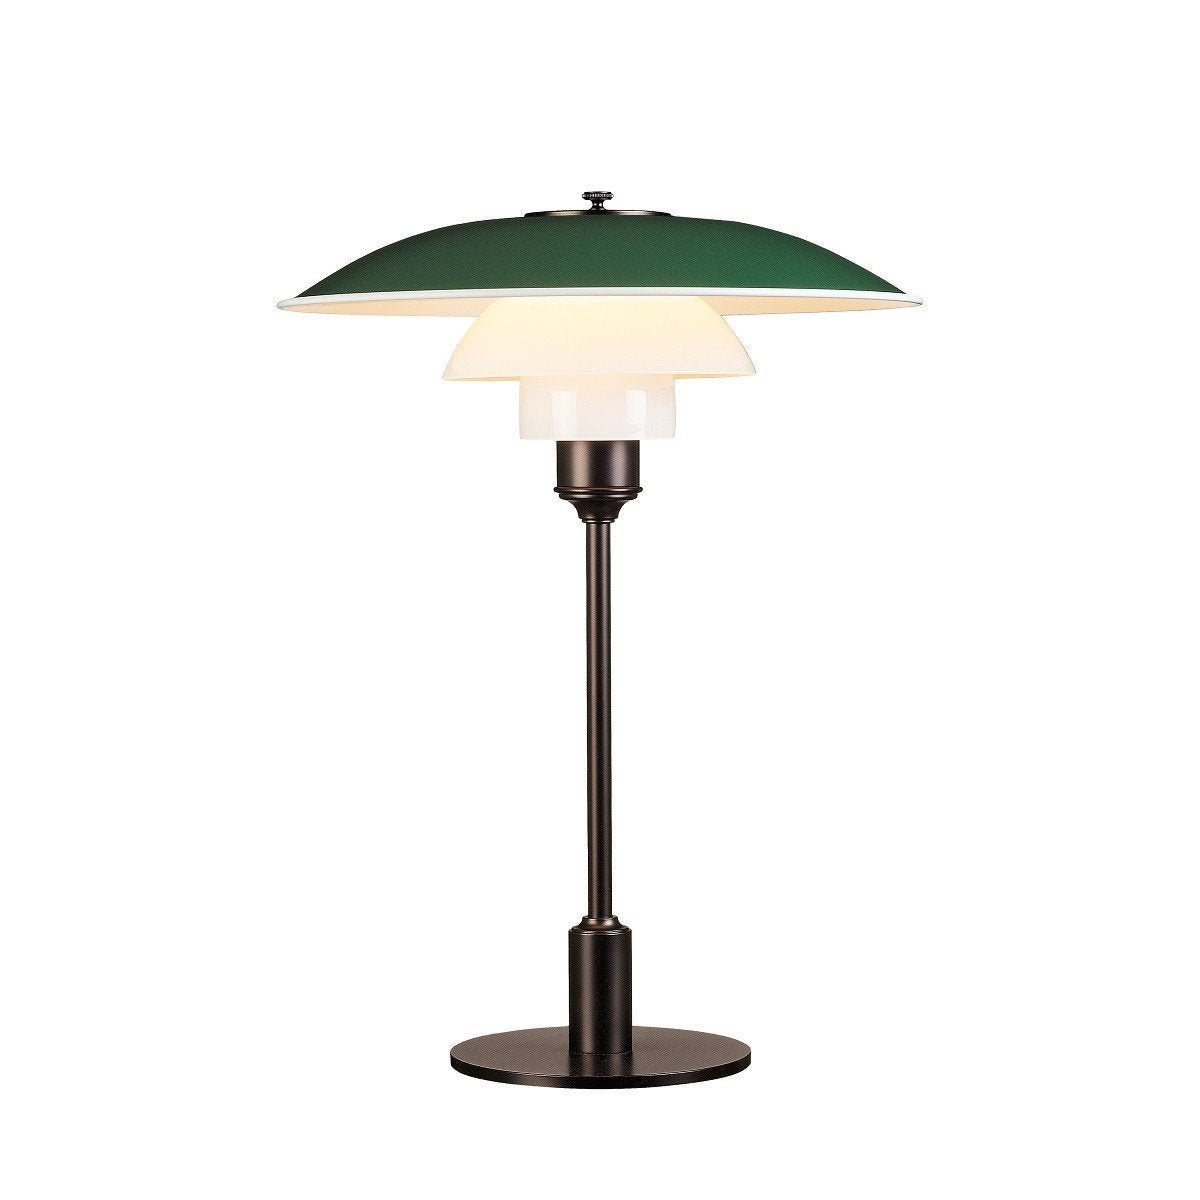 Louis Poulsen PH 3 1/2 2 1/2 stolní lampa, zelená